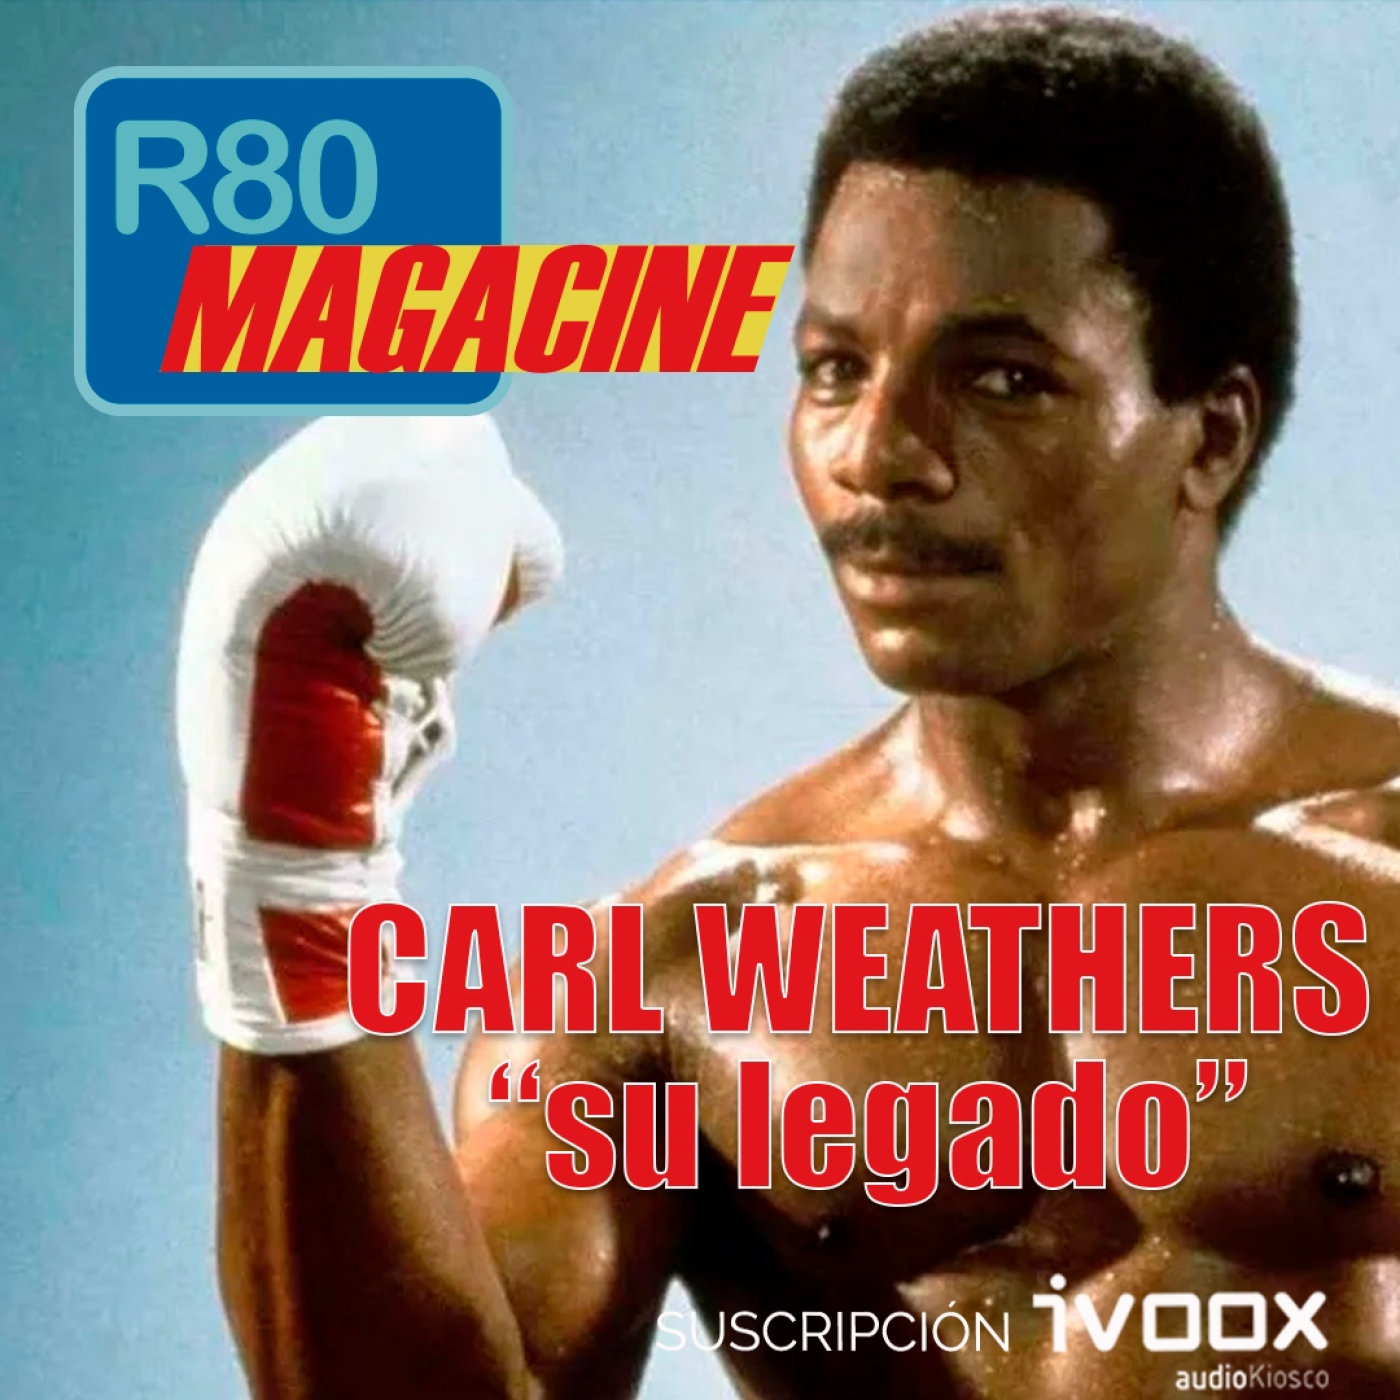 R80 Magacine  ️:CARL WEATHERS, SU LEGADO. - Episodio exclusivo para mecenas